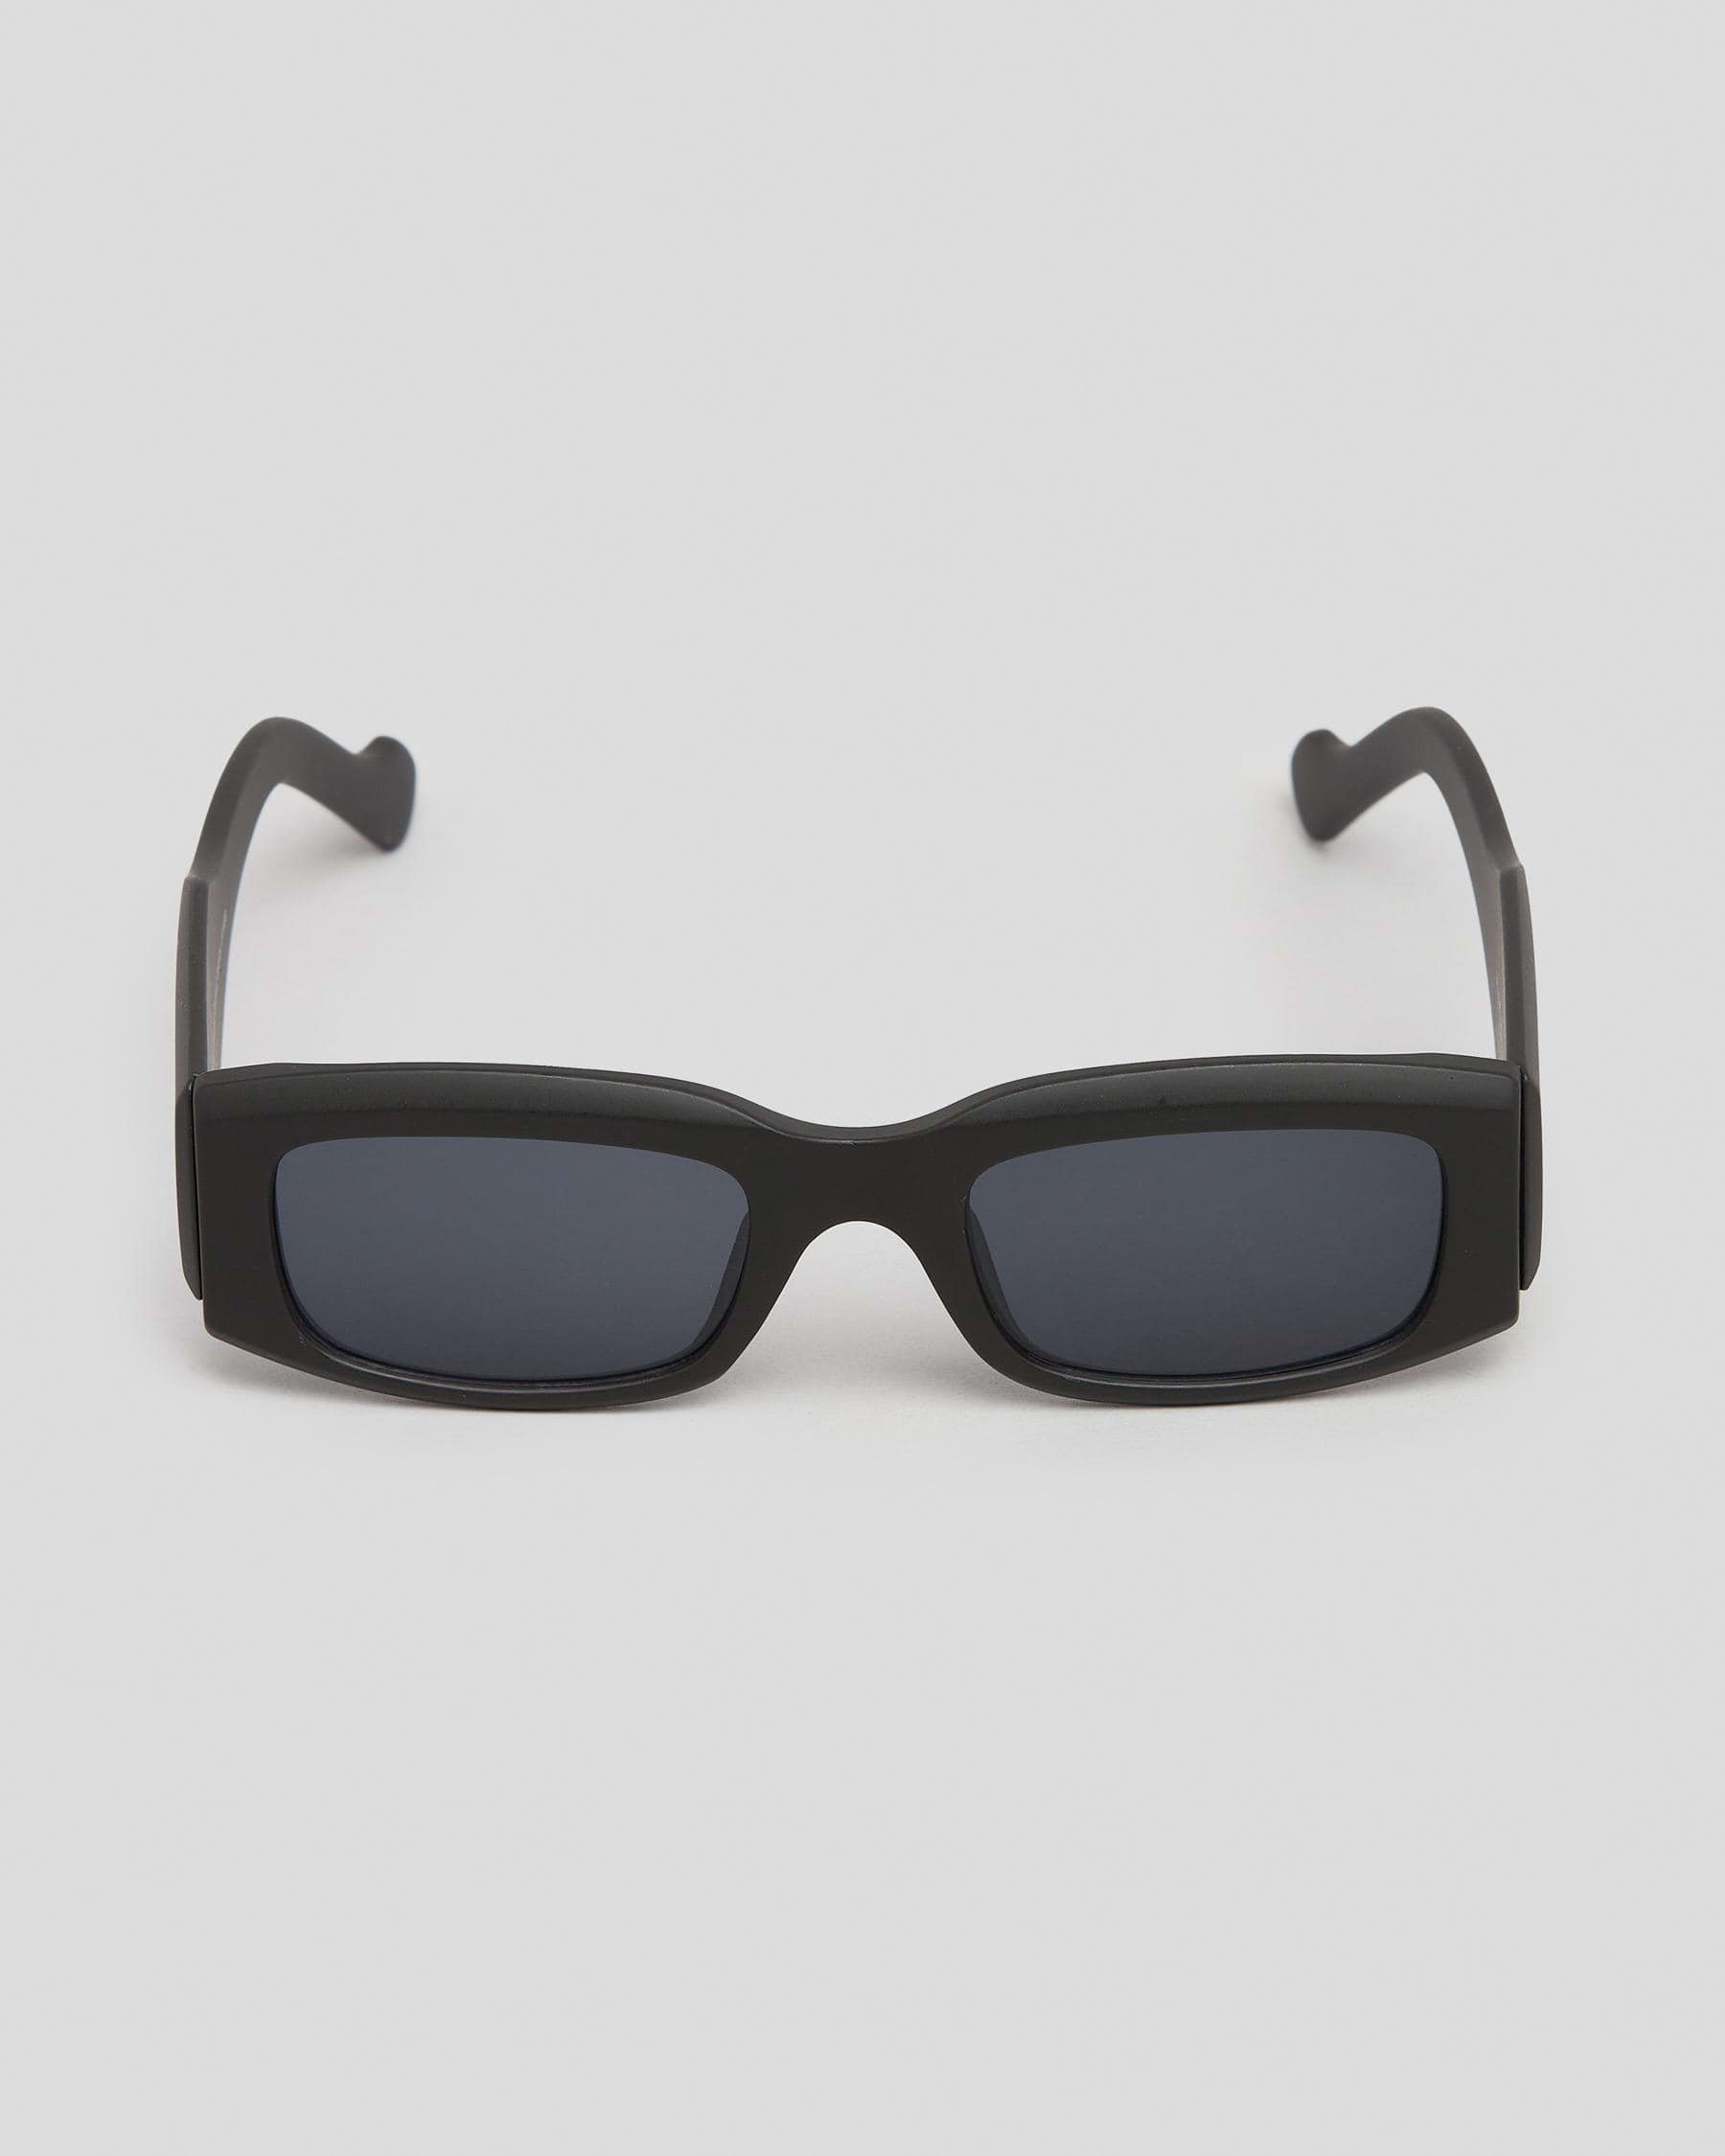 Indie Eyewear Lottie Sunglasses In Matt Black/black - Fast Shipping ...